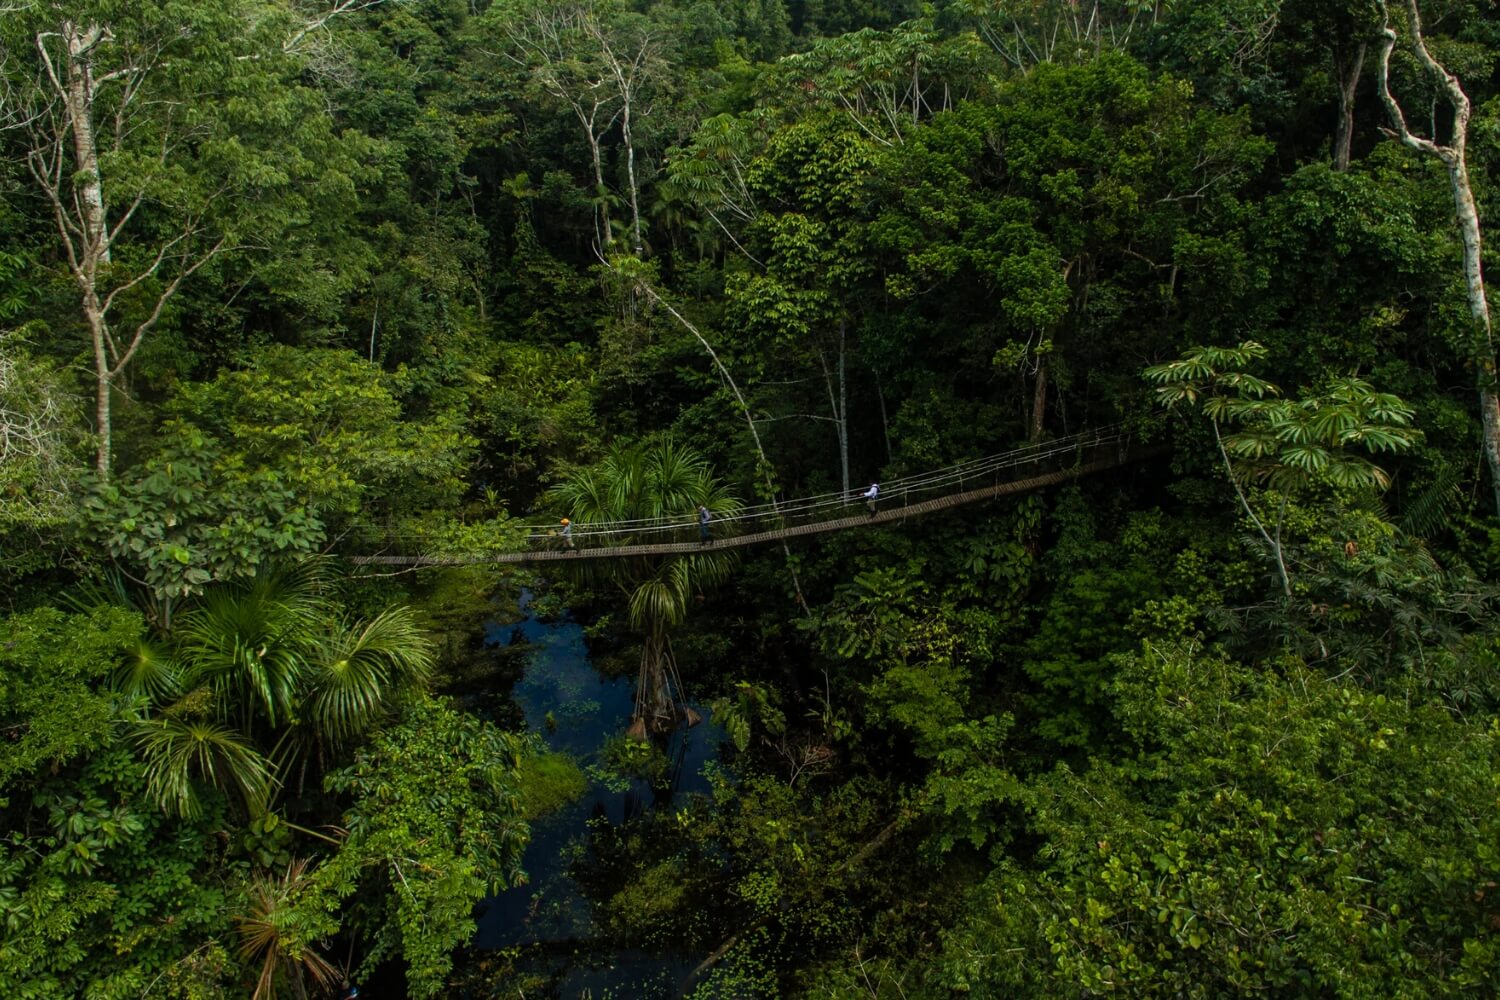 THE AMAZON RAINFOREST COVERS AN ENORMOUS 6.7 MILLION SQUARE KILOMETRES